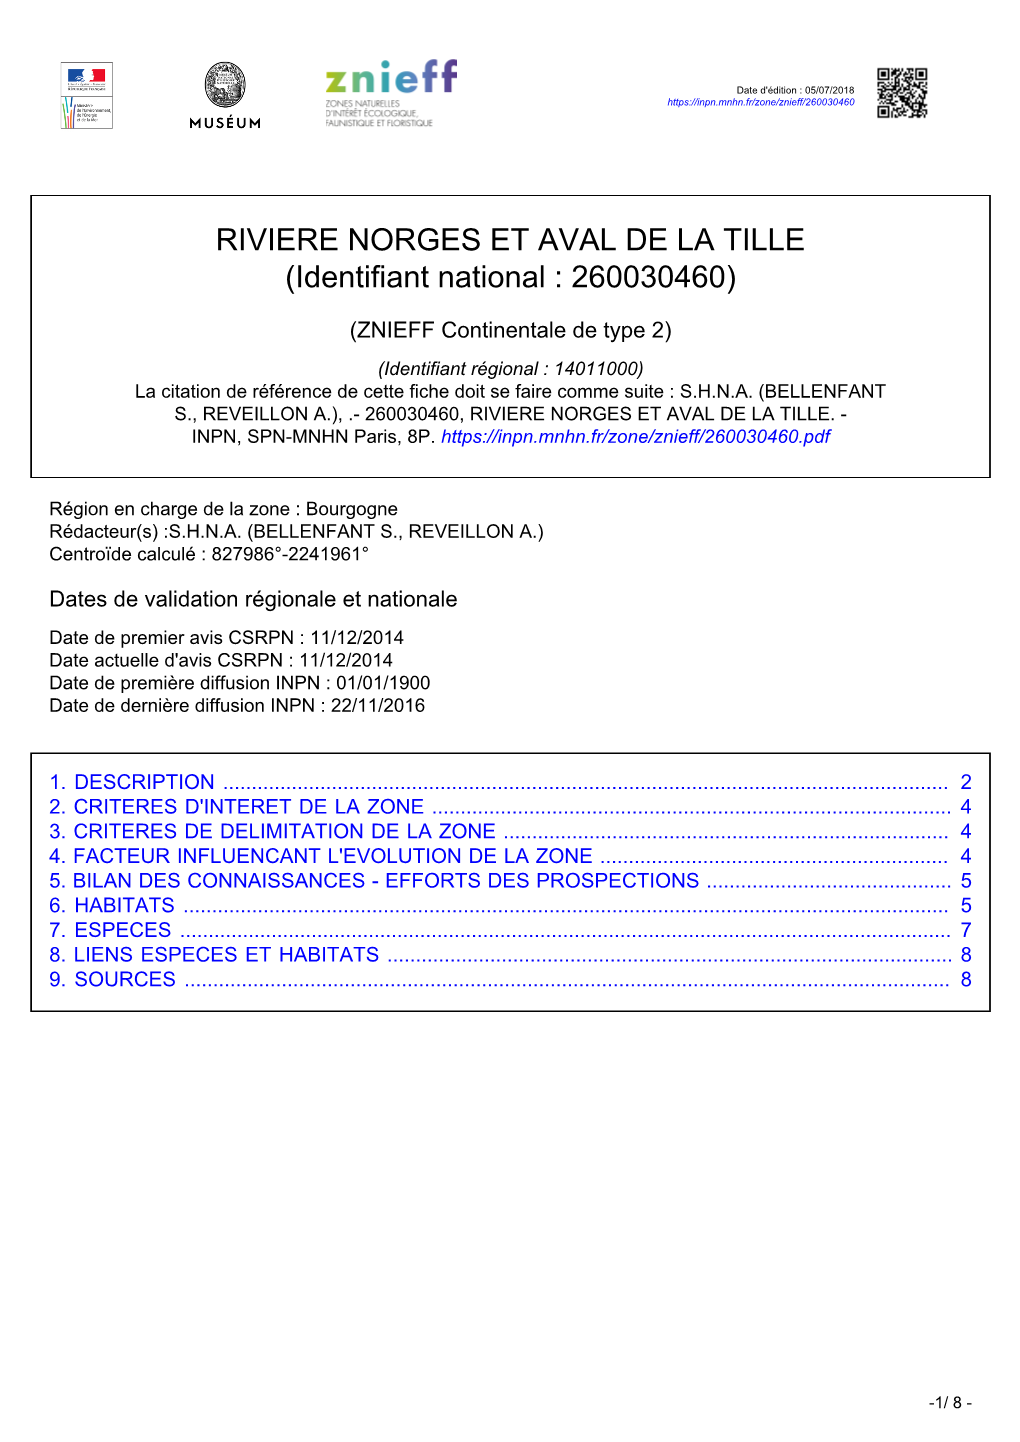 RIVIERE NORGES ET AVAL DE LA TILLE (Identifiant National : 260030460)